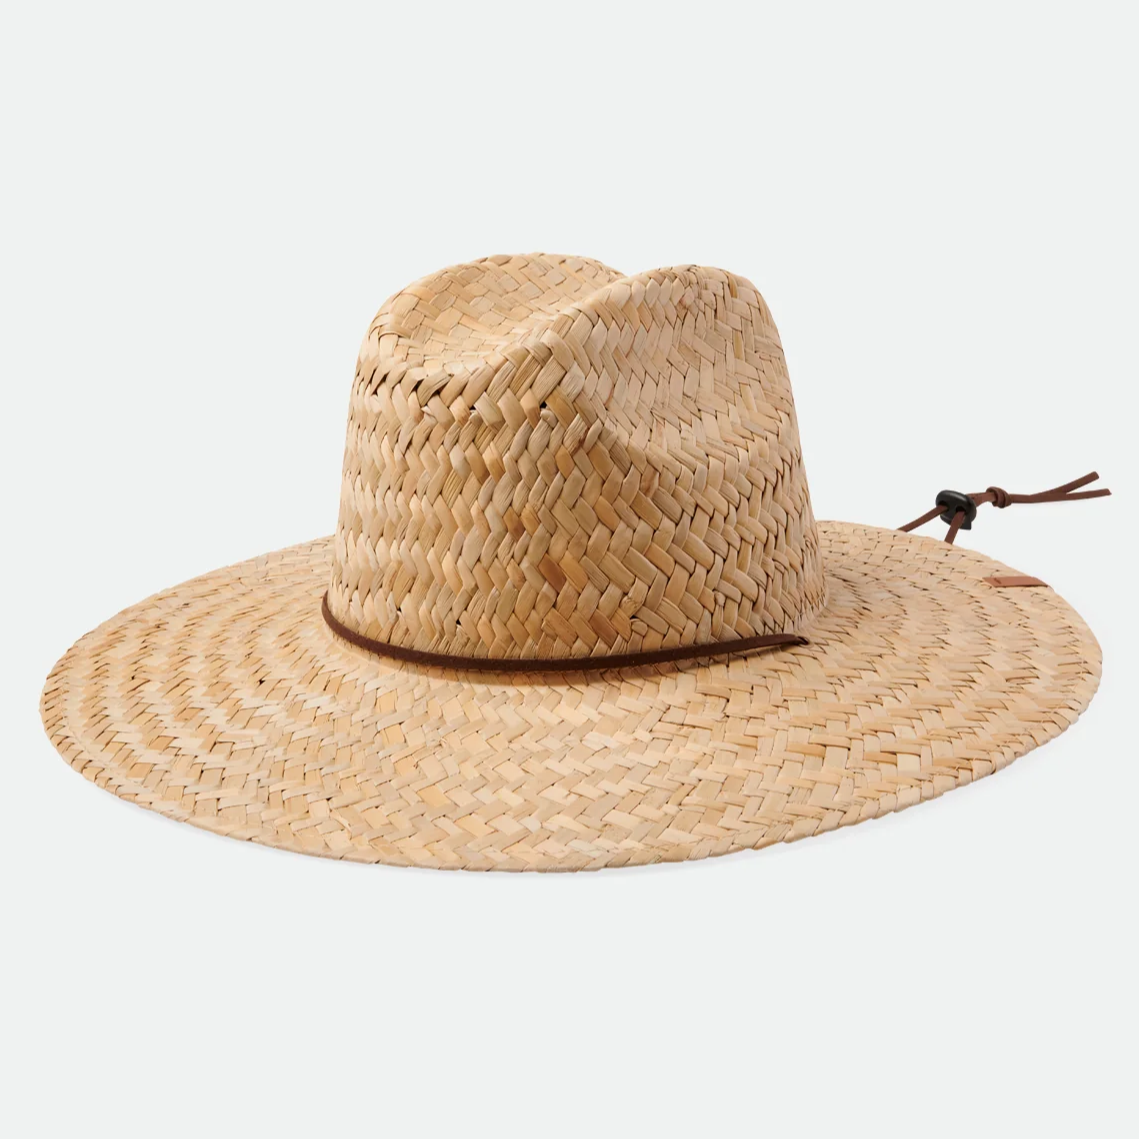 Brixton - Bells II Lifeguard Hat - Straw Hat - Tan/Tan